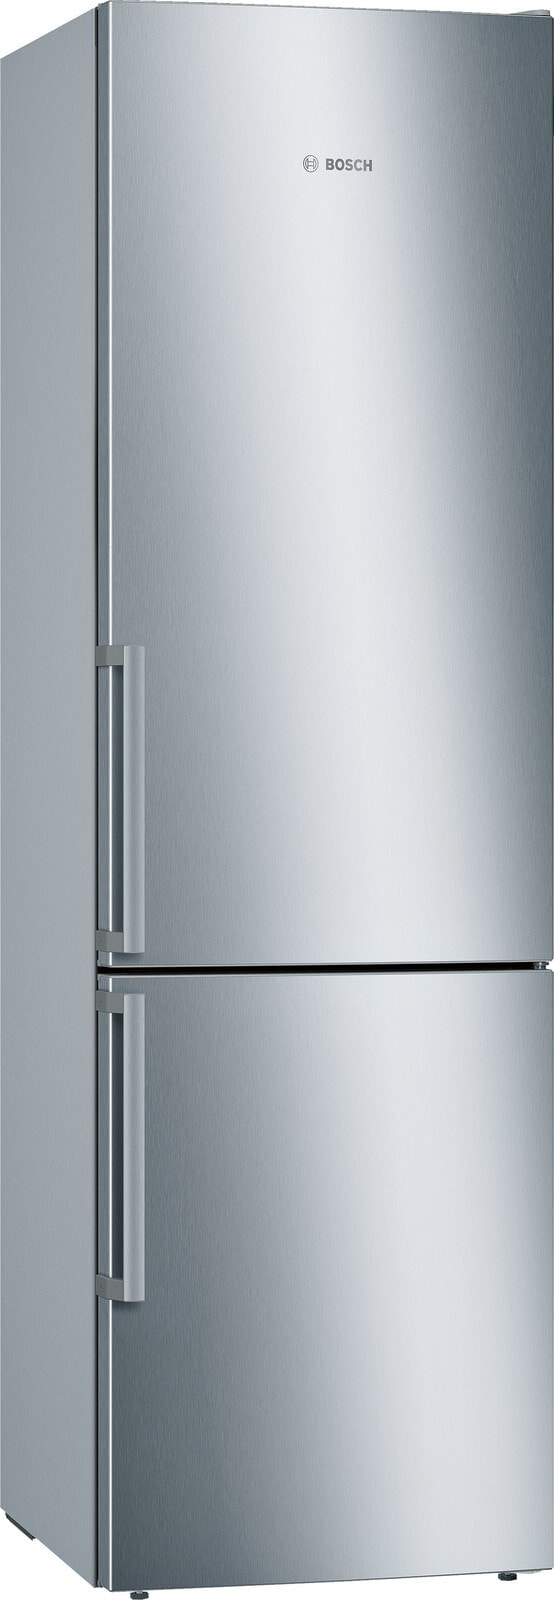 Bosch Serie 6 KGE398IBP холодильник с морозильной камерой Отдельно стоящий 343 L B Нержавеющая сталь